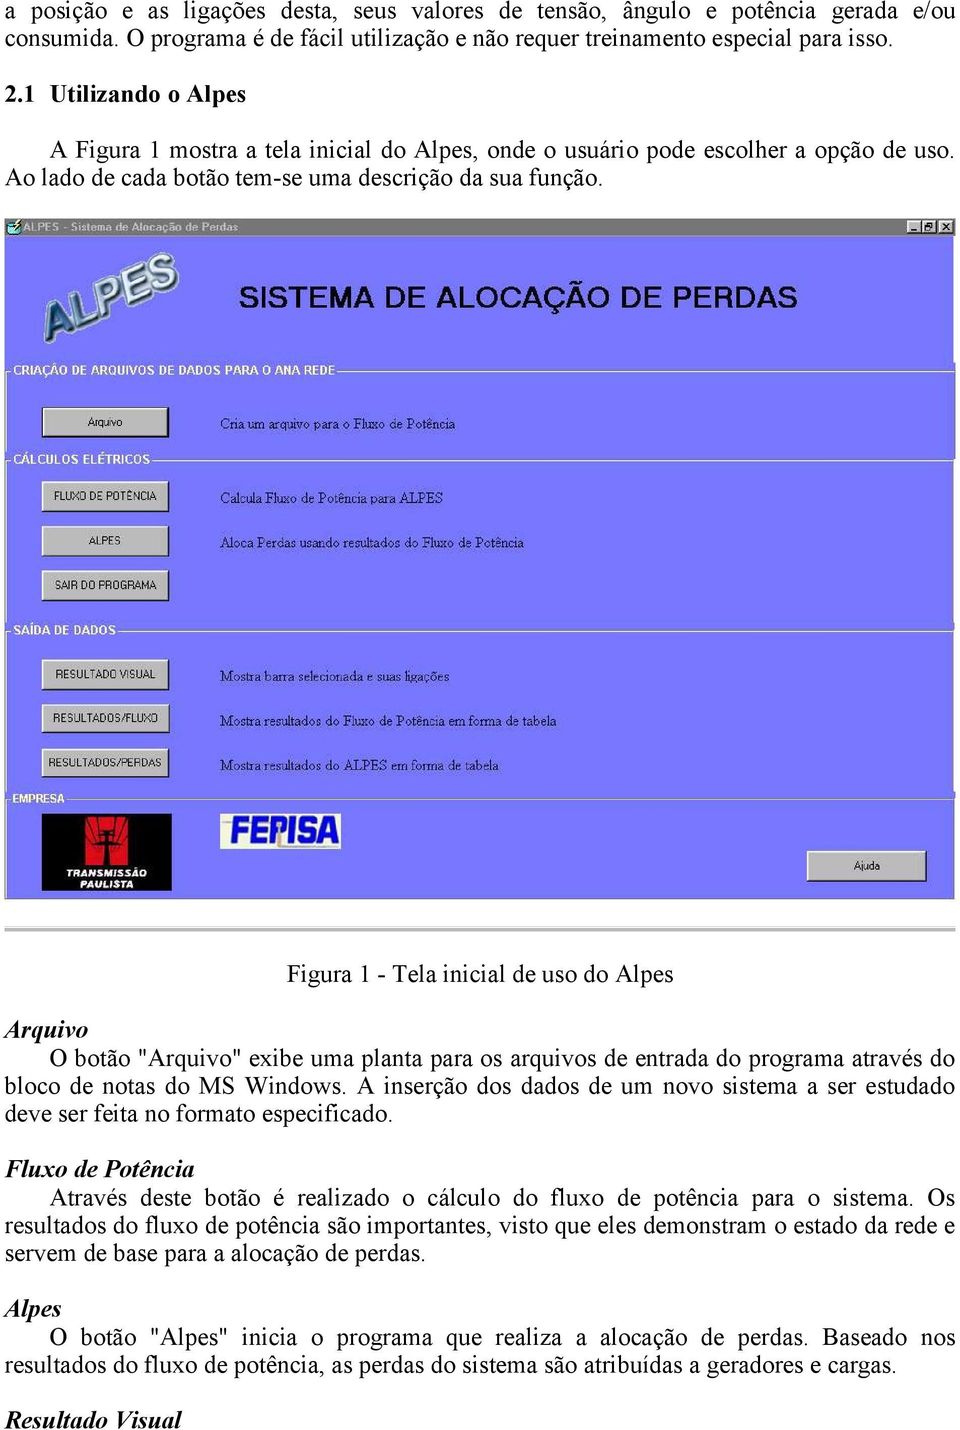 Figura 1 - Tela inicial de uso do Alpes Arquivo O botão "Arquivo" exibe uma planta para os arquivos de entrada do programa através do bloco de notas do MS Windows.